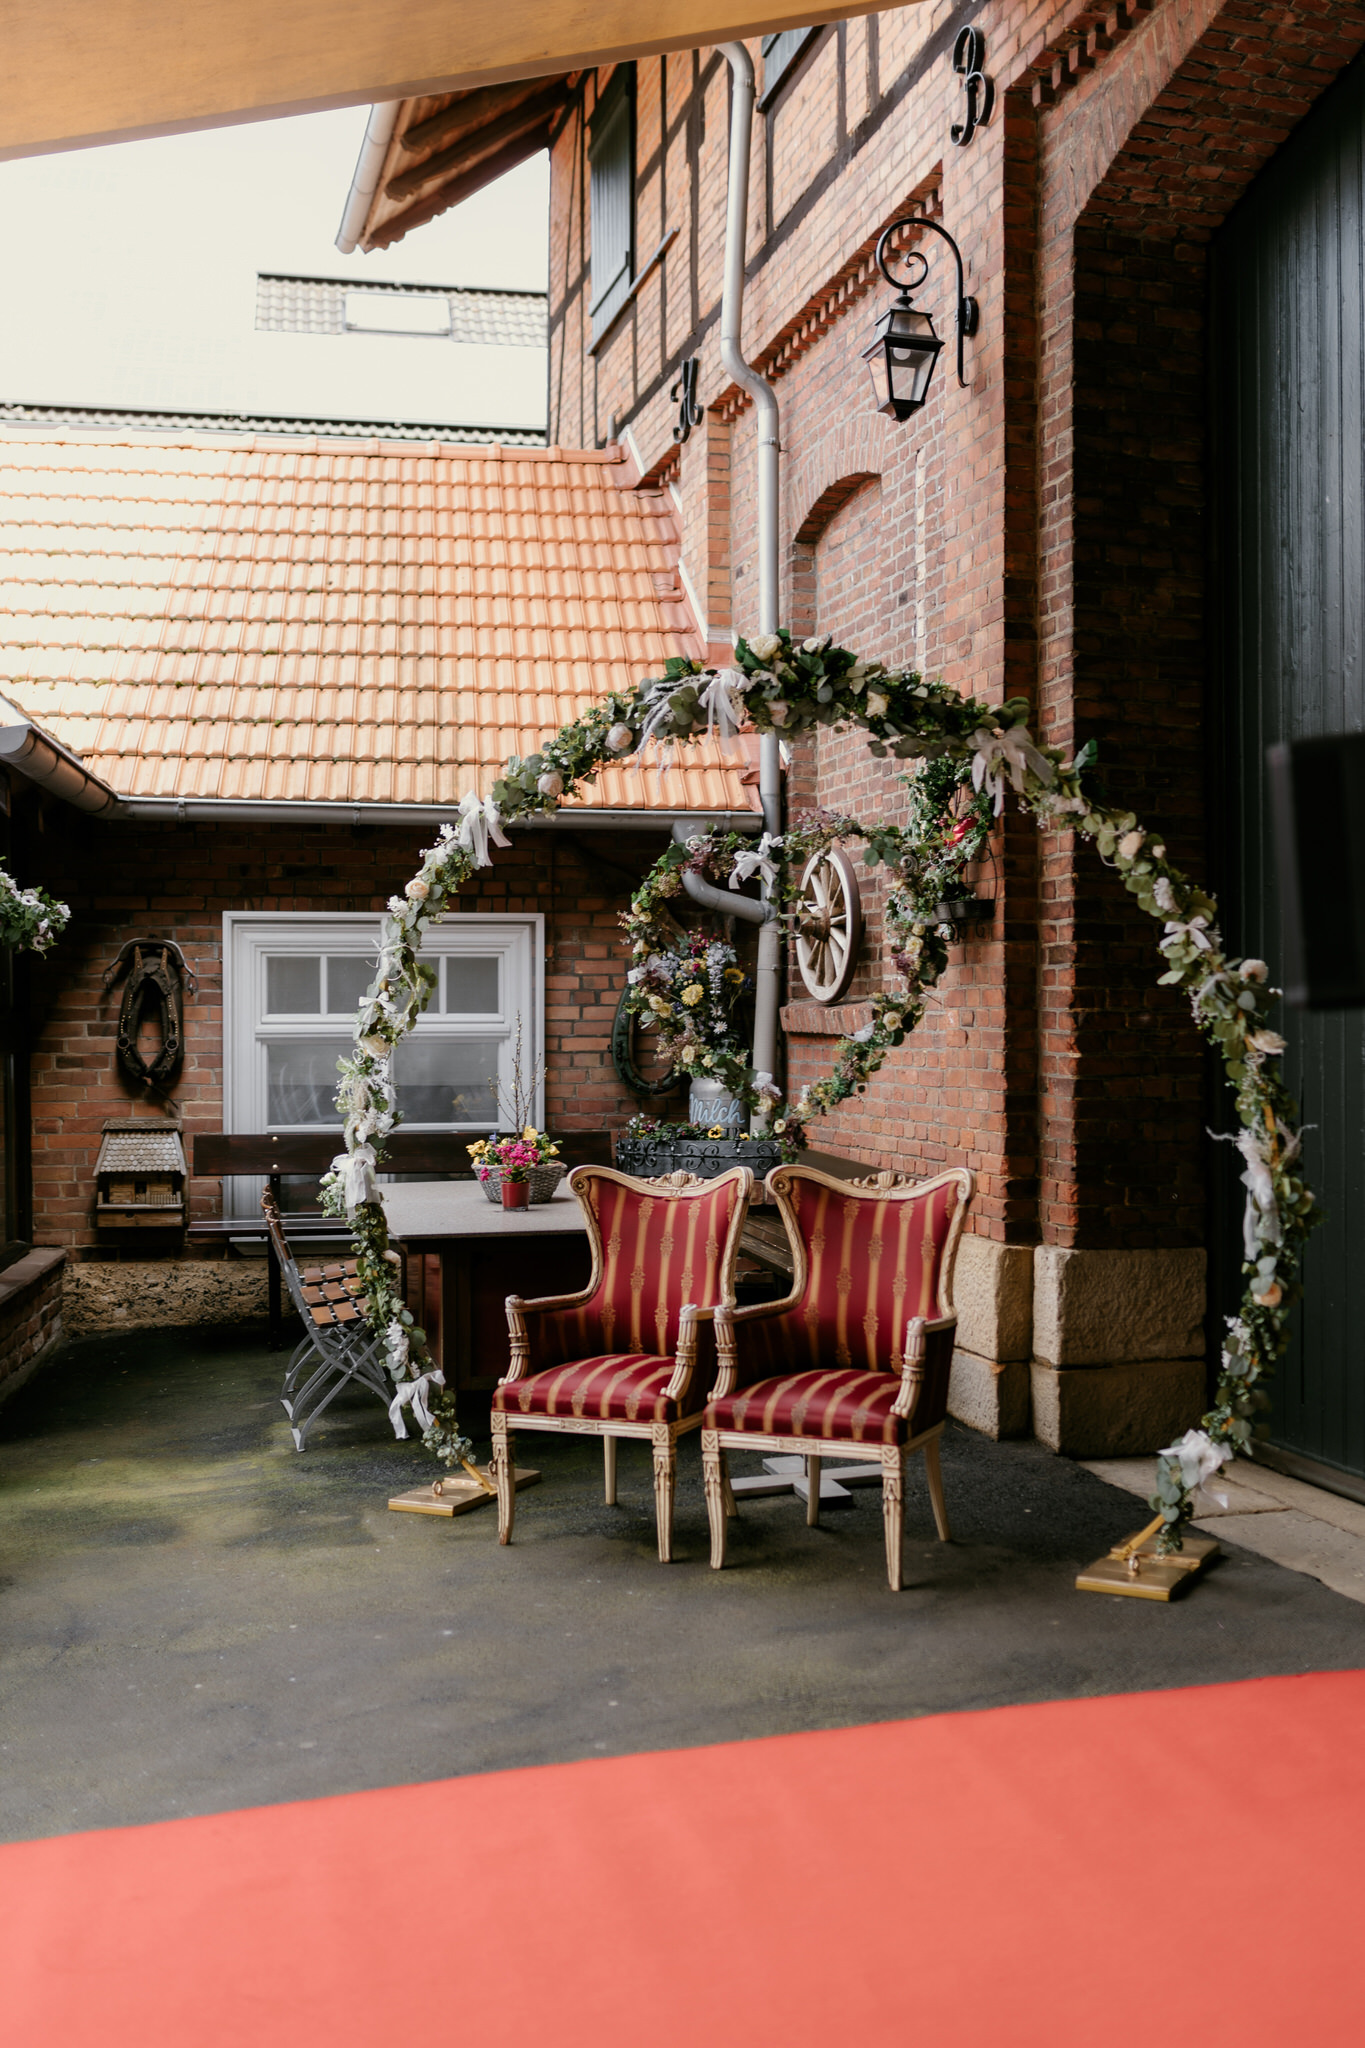 Festliche Hochzeit im Löwenhof, Lohfelden – Das Brautpaar feiert den schönsten Tag seines Lebens in dieser charmanten Location, umgeben von herzlicher Atmosphäre und festlichem Glanz.